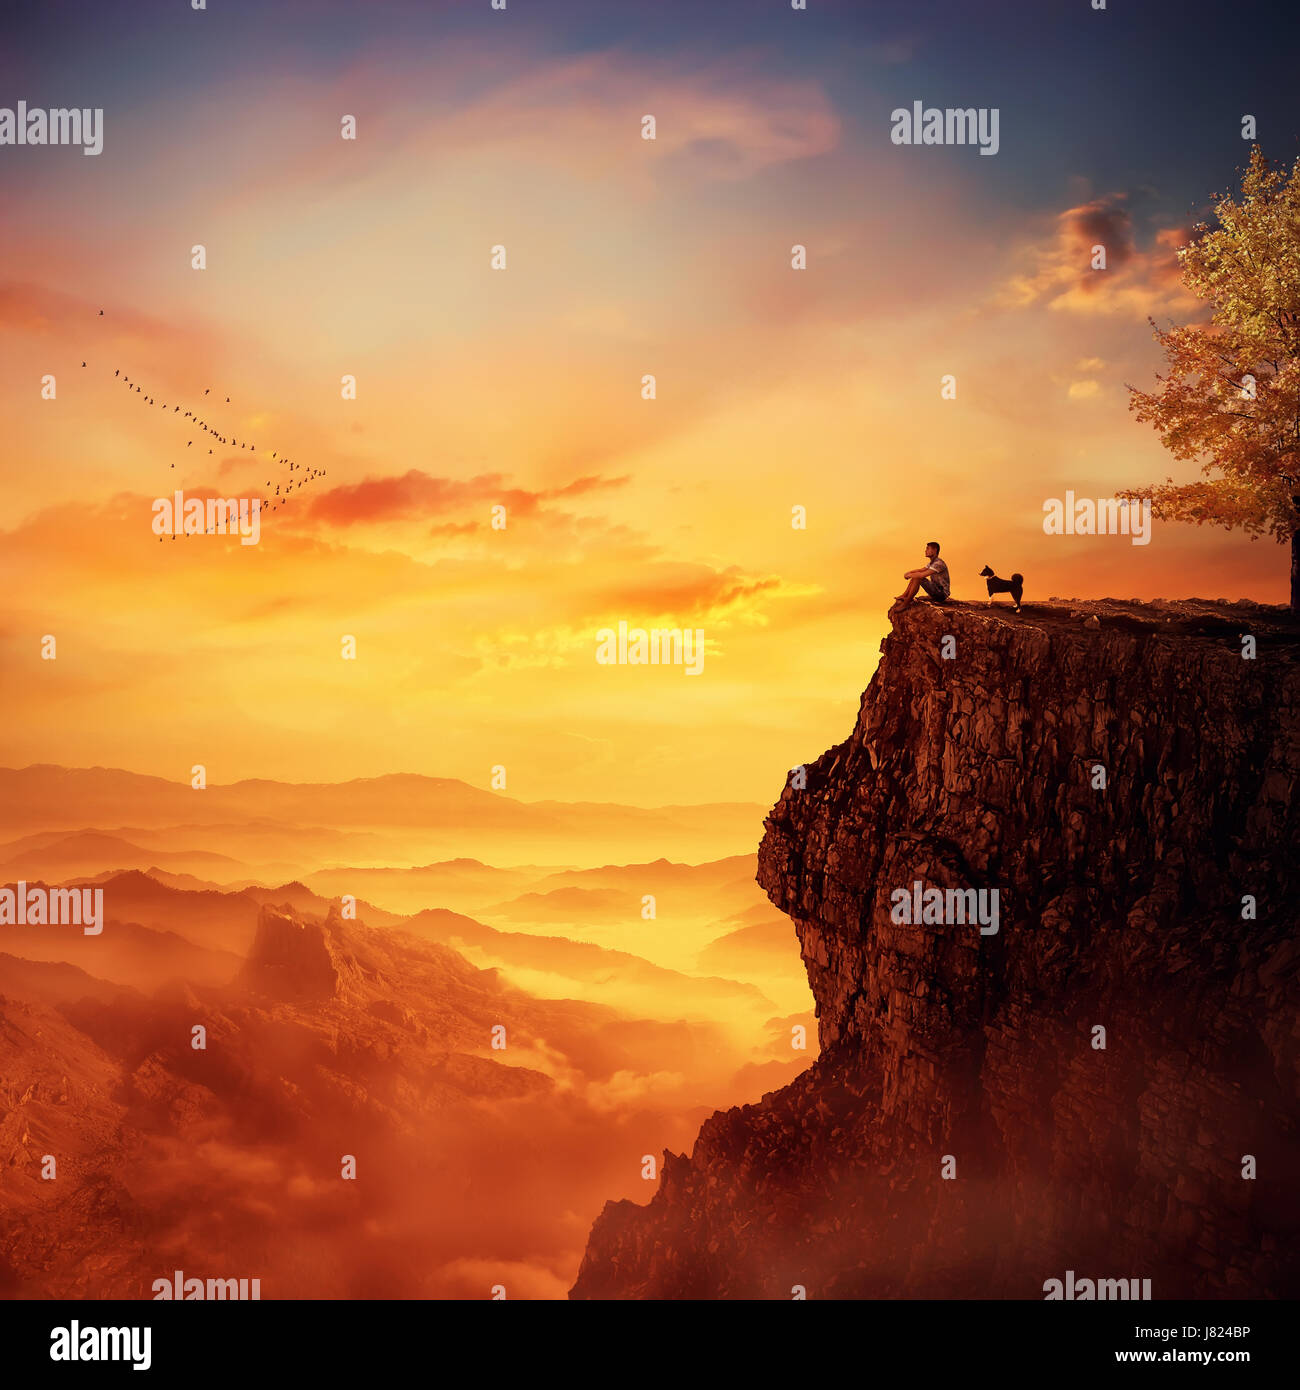 Giovane uomo con il suo fedele cane in piedi sulla cima di una scogliera a guardare il tramonto sulla valle. Ricordando i ricordi d'infanzia, amicizia tra huma Foto Stock